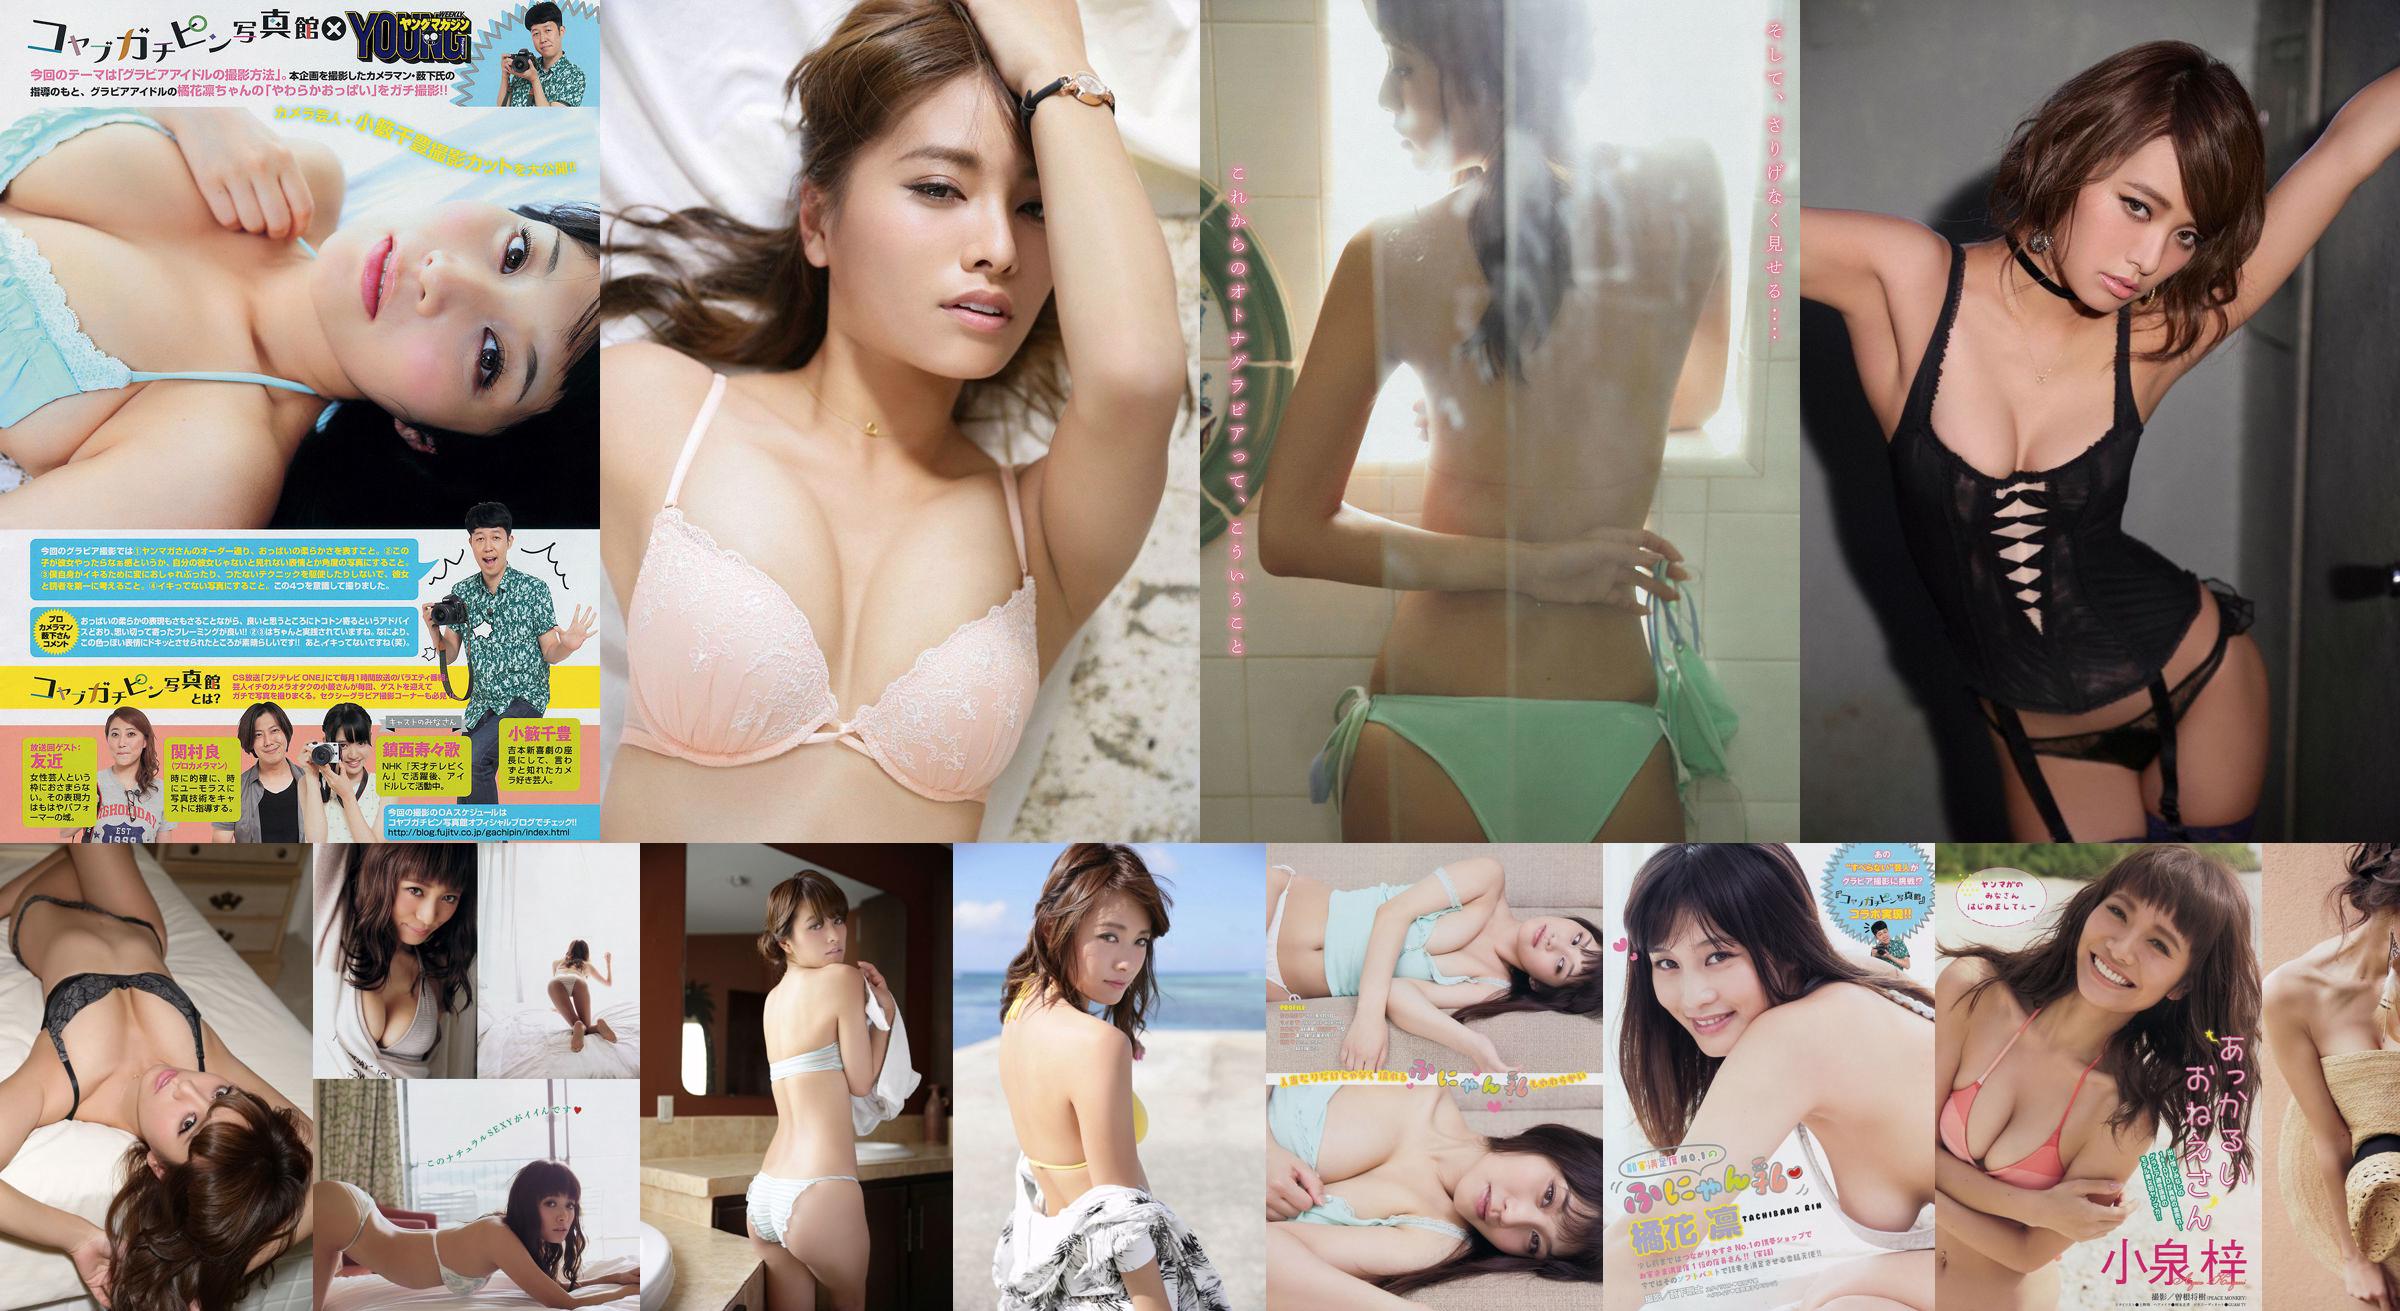 [Young Magazine] Azusa Koizumi Tachibana Rin 2014 No.43 Photo Magazine No.177d92 Pagina 3